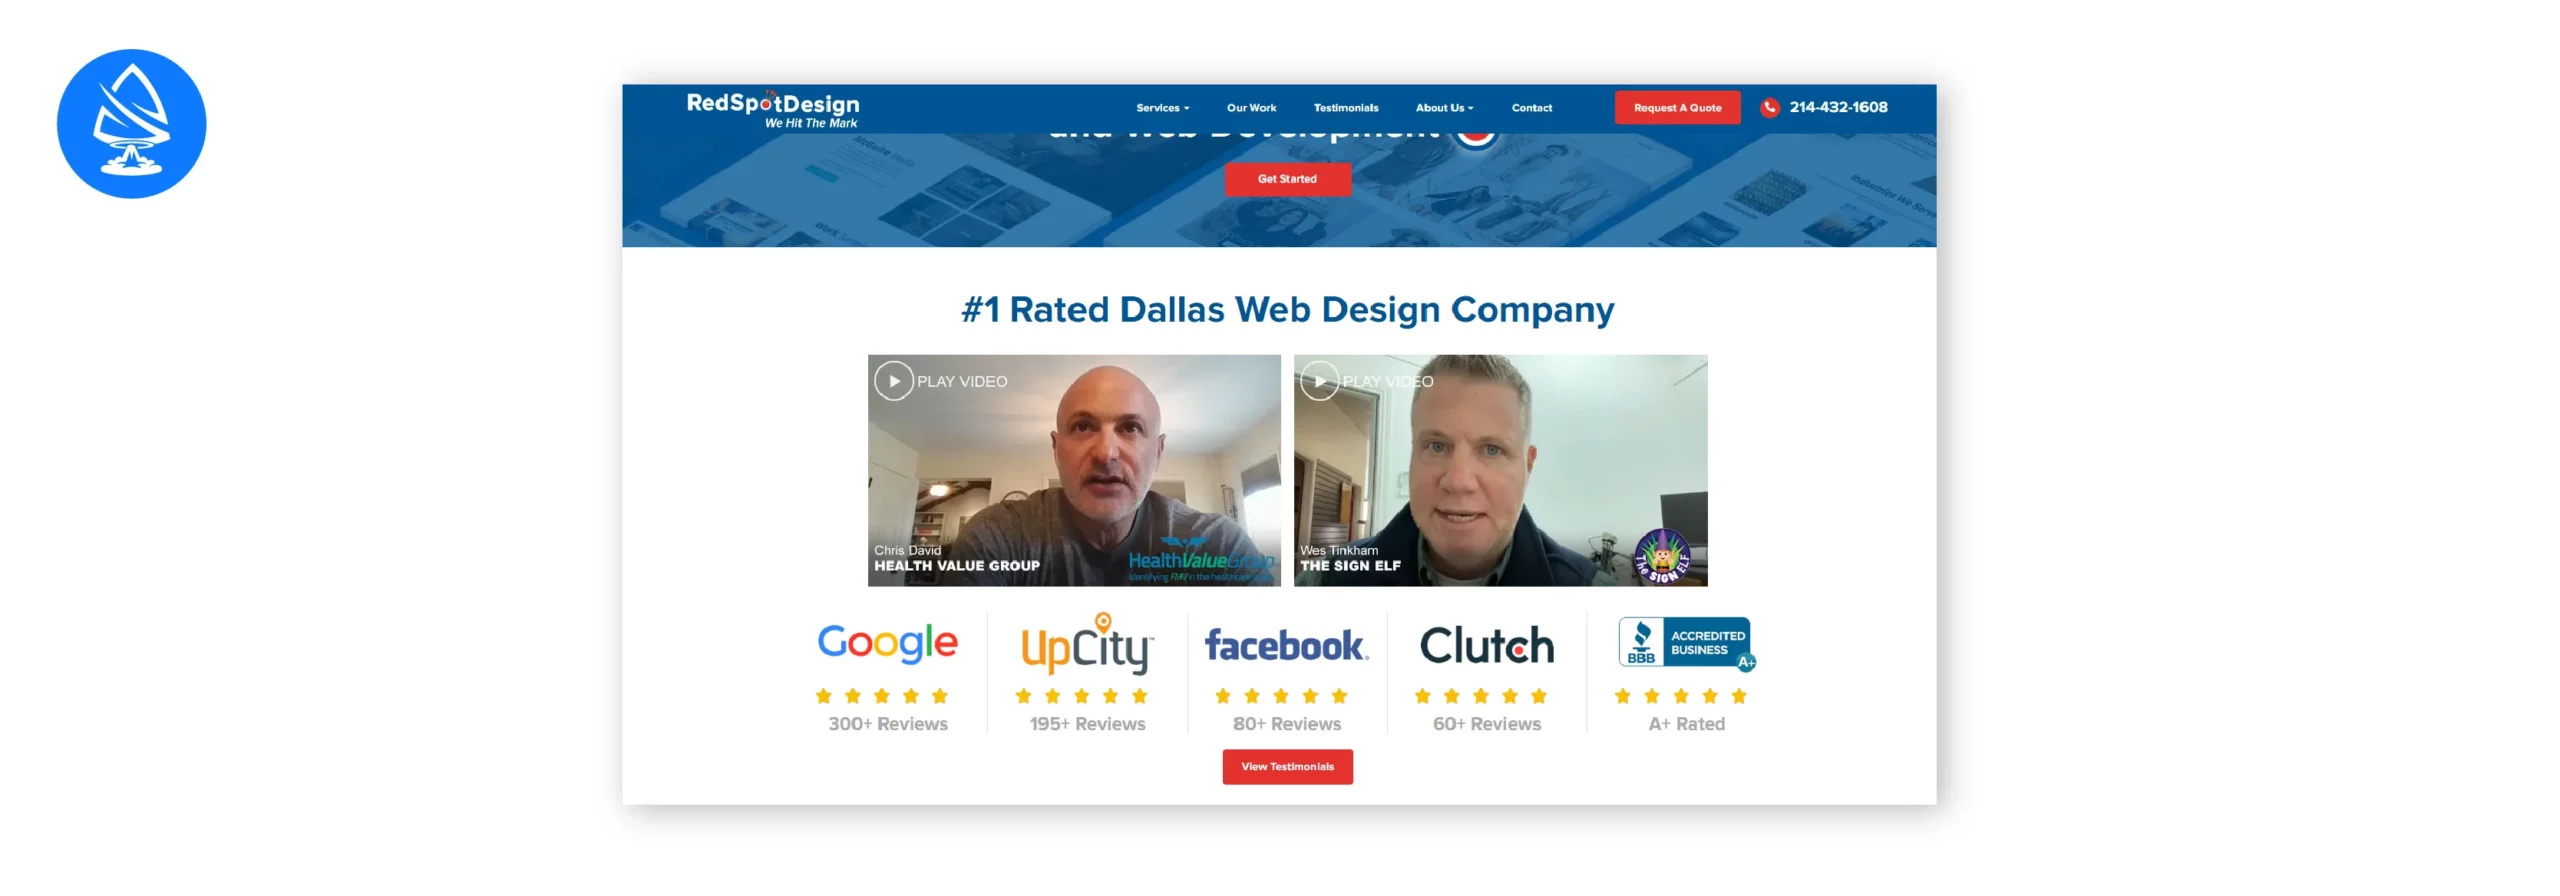 Red Spot Design - Expert in WordPress Website Design